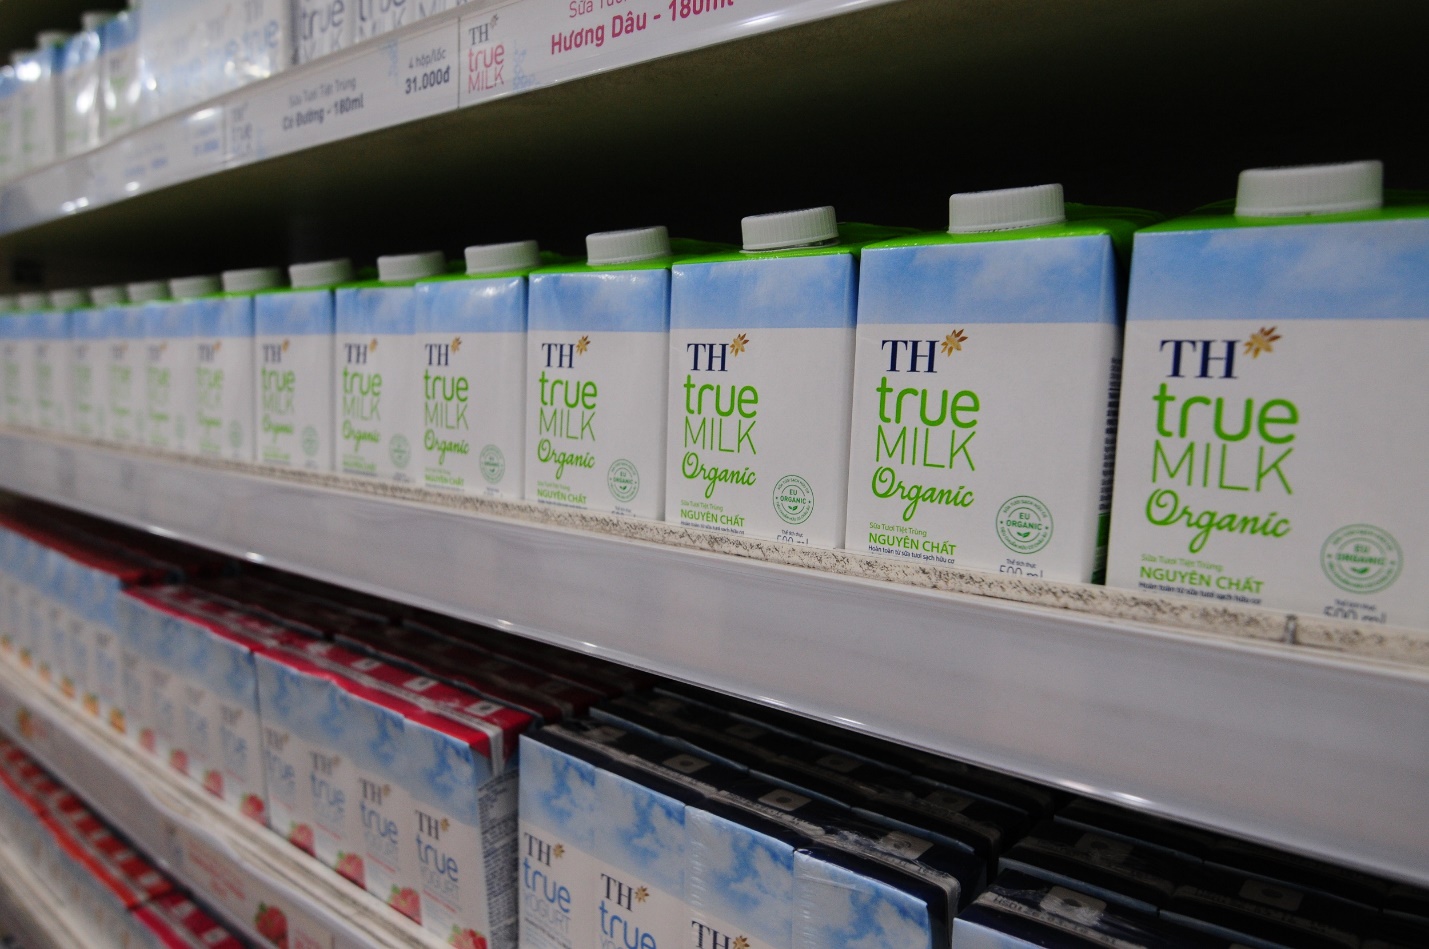 Tập đoàn TH nhận 3 Cúp “Sản phẩm hữu cơ vì sức khỏe cộng đồng” cho sữa tươi, rau quả và thảo dược - Ảnh 3.